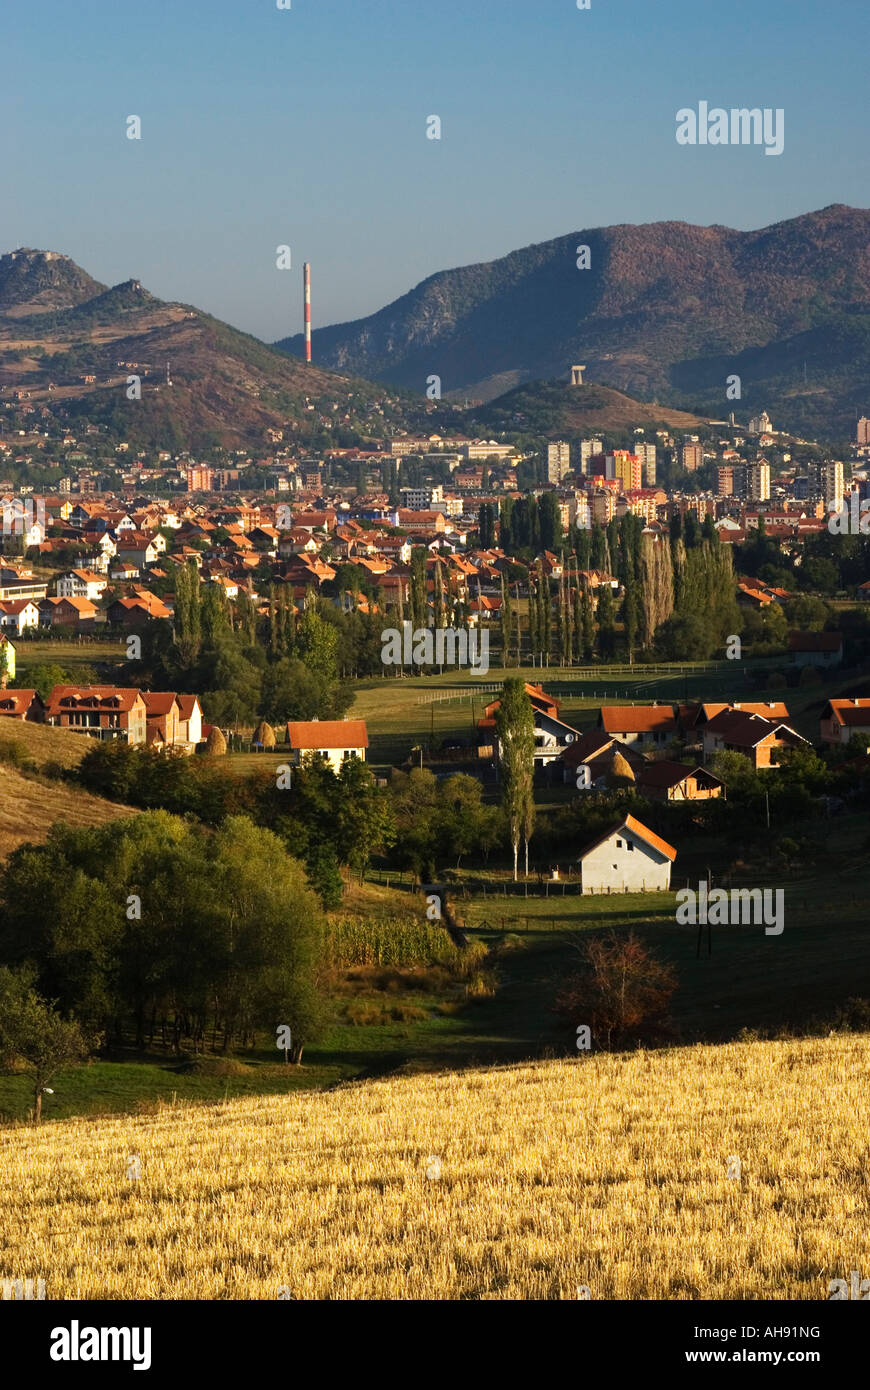 View of Mitrovica, Kosovo province, Serbia Stock Photo